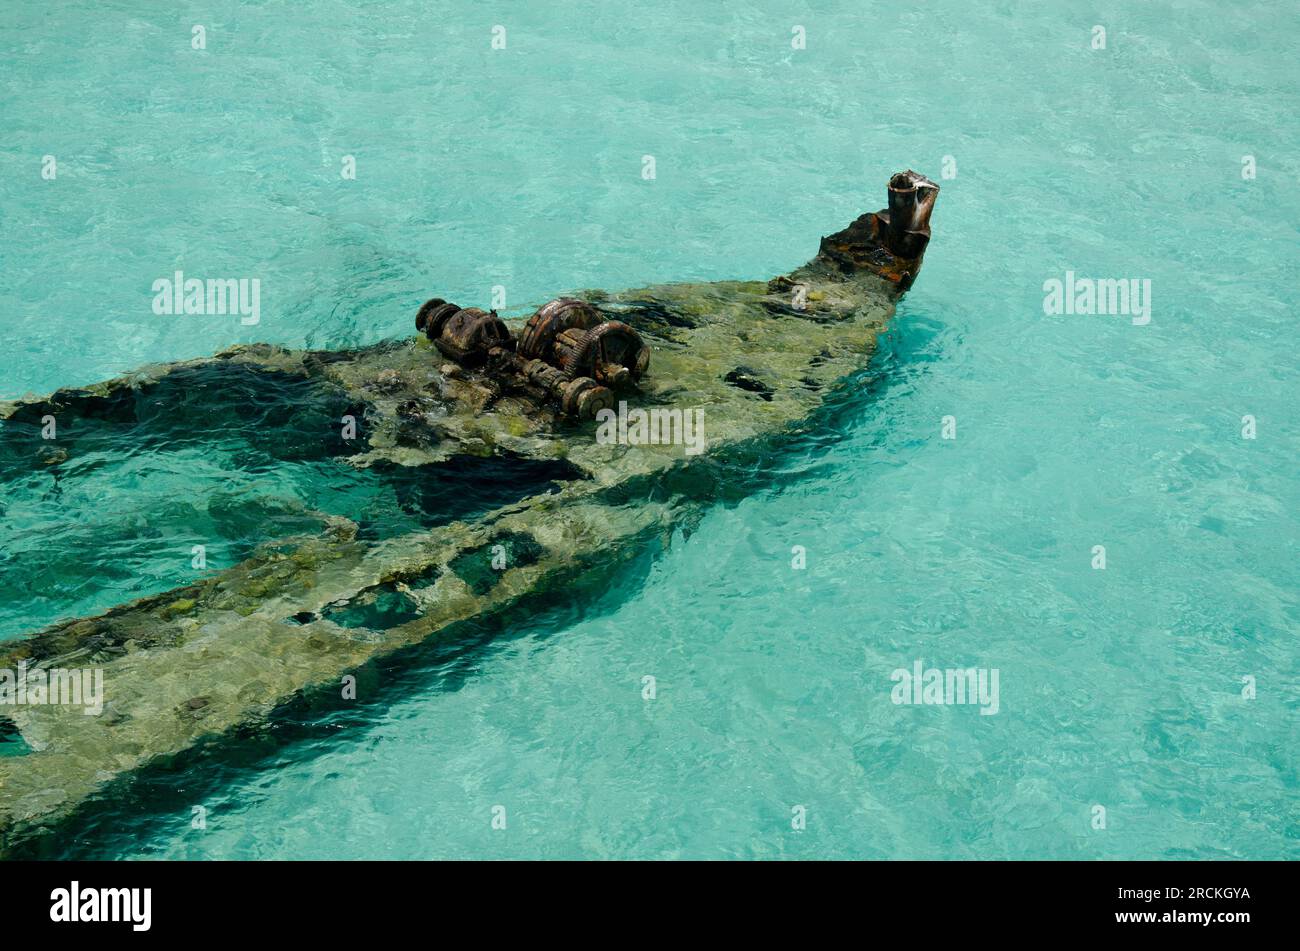 Vue aérienne d'un ancien naufrage dans les îles san blas, Panama, Amérique centrale - photo stock Banque D'Images